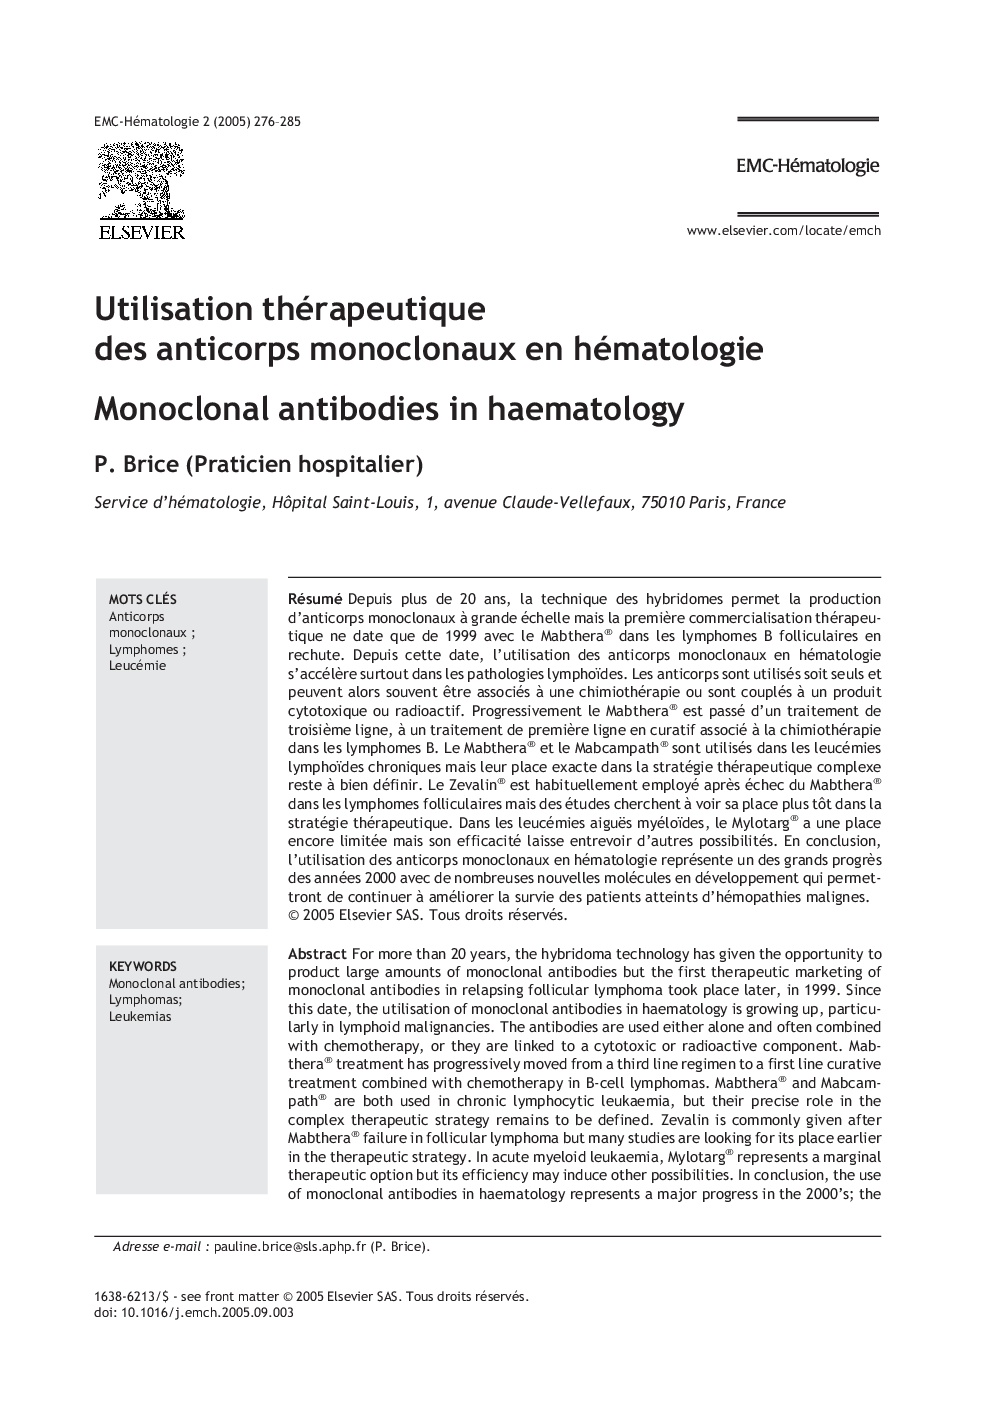 Utilisation thérapeutique des anticorps monoclonaux en hématologie